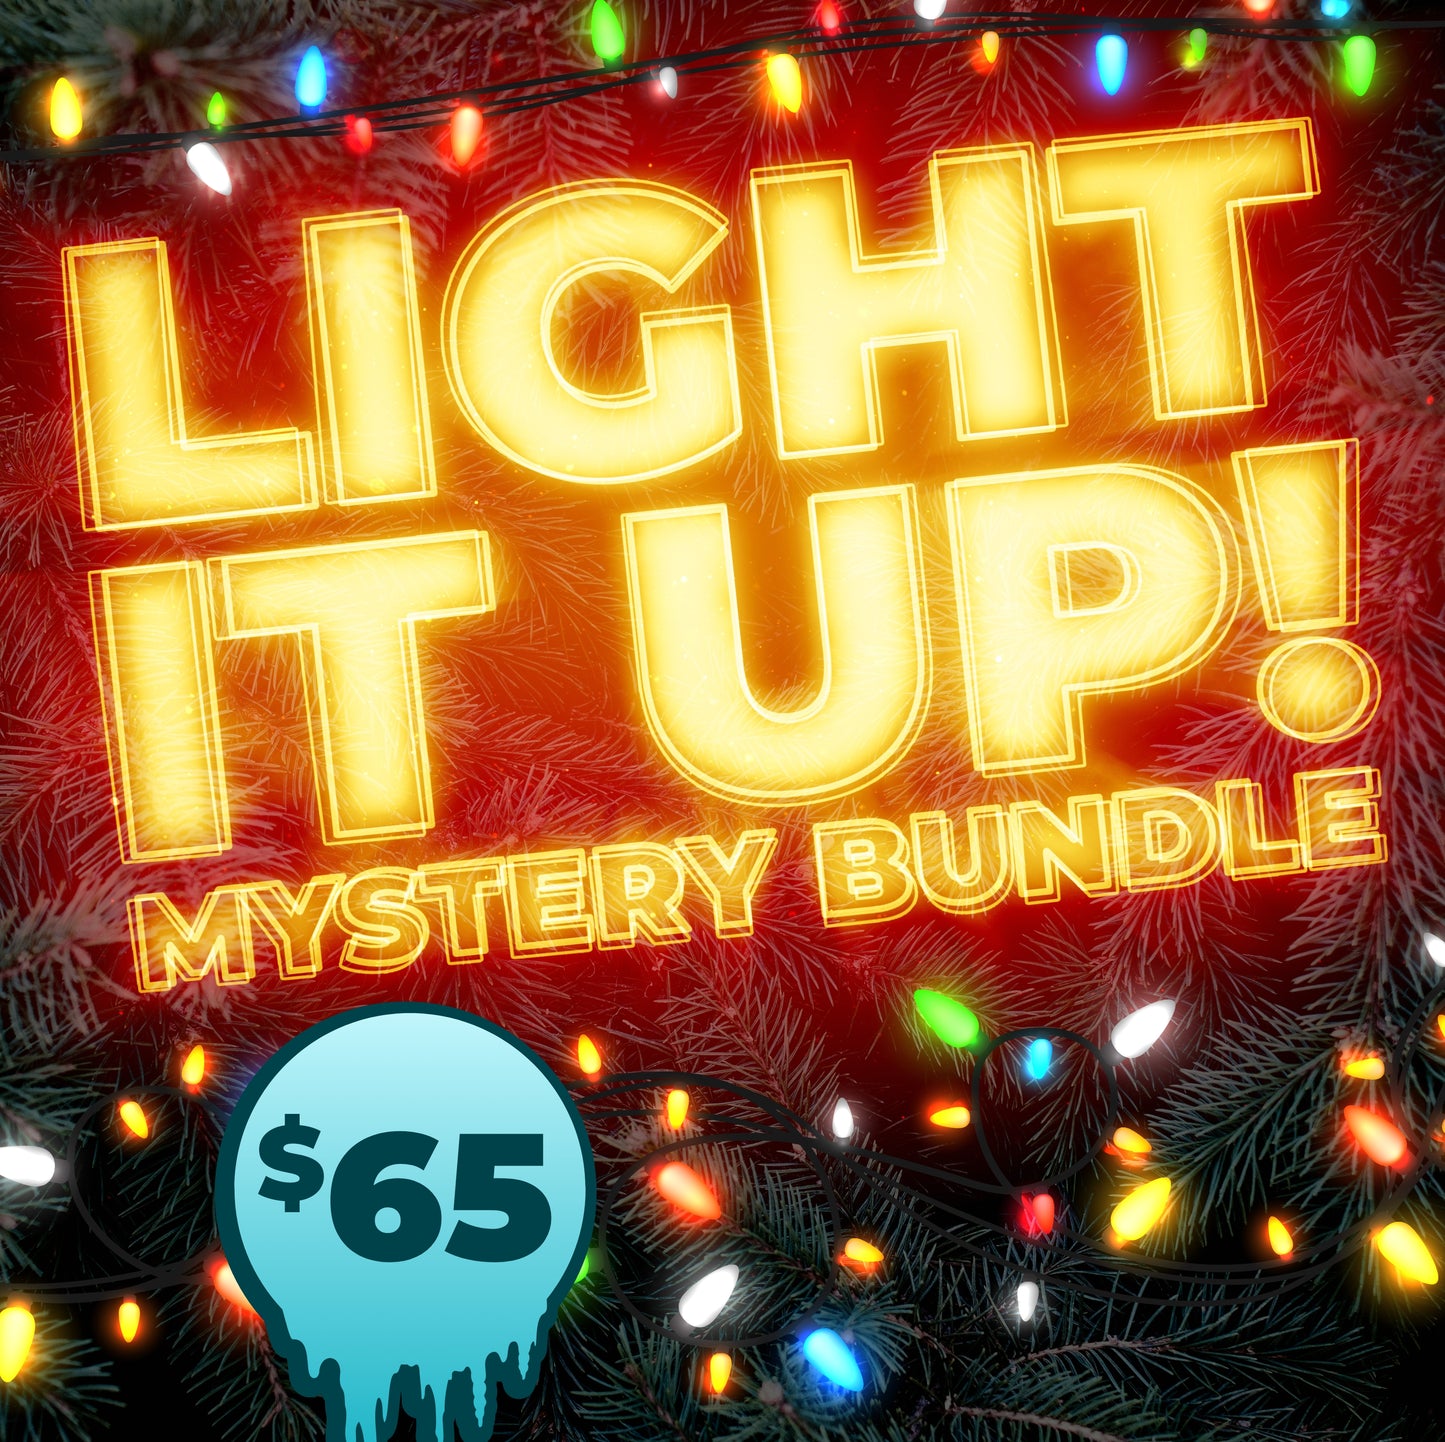 Light it Up Mystery Bundle